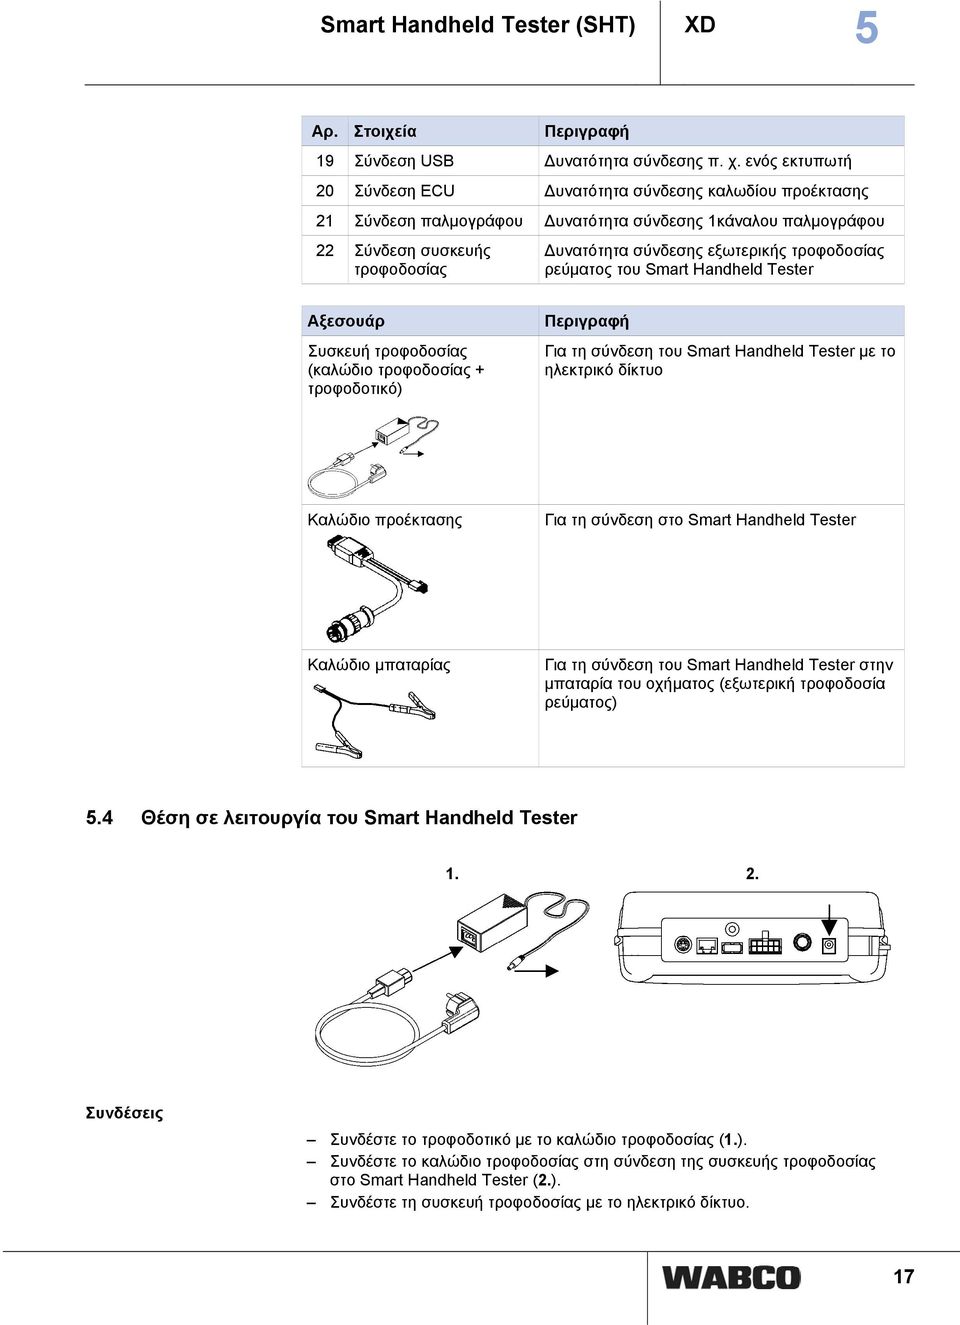 τροφοδοσίας ρεύματος του Smart Handheld Tester Αξεσουάρ Συσκευή τροφοδοσίας (καλώδιο τροφοδοσίας + τροφοδοτικό) Περιγραφή Για τη σύνδεση του Smart Handheld Tester με το ηλεκτρικό δίκτυο Καλώδιο